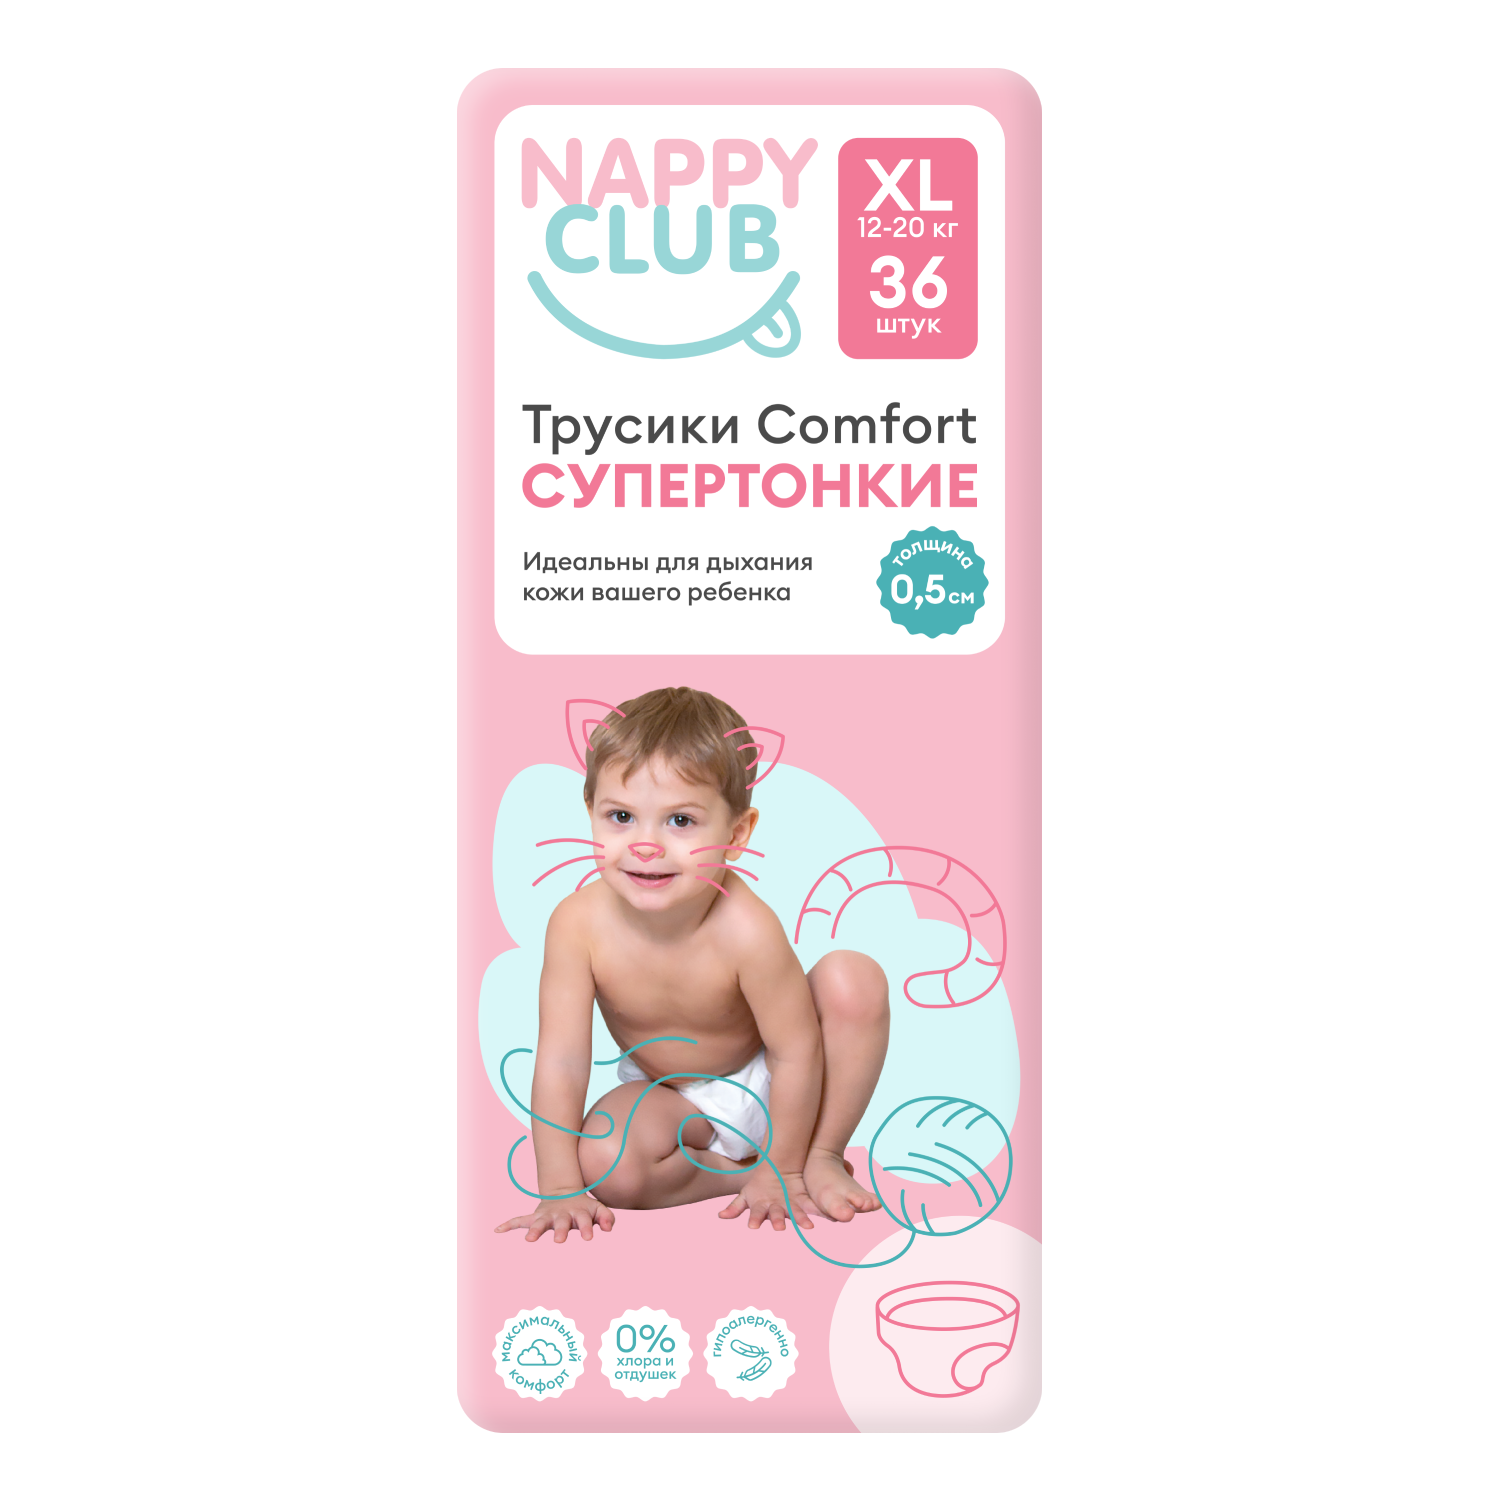 NappyClub трусики Comfort дневные супер-тонкие XL (12-20 кг) 36 шт. nappyclub трусики premium дневные супер тонкие xl 12 20 кг 38 шт